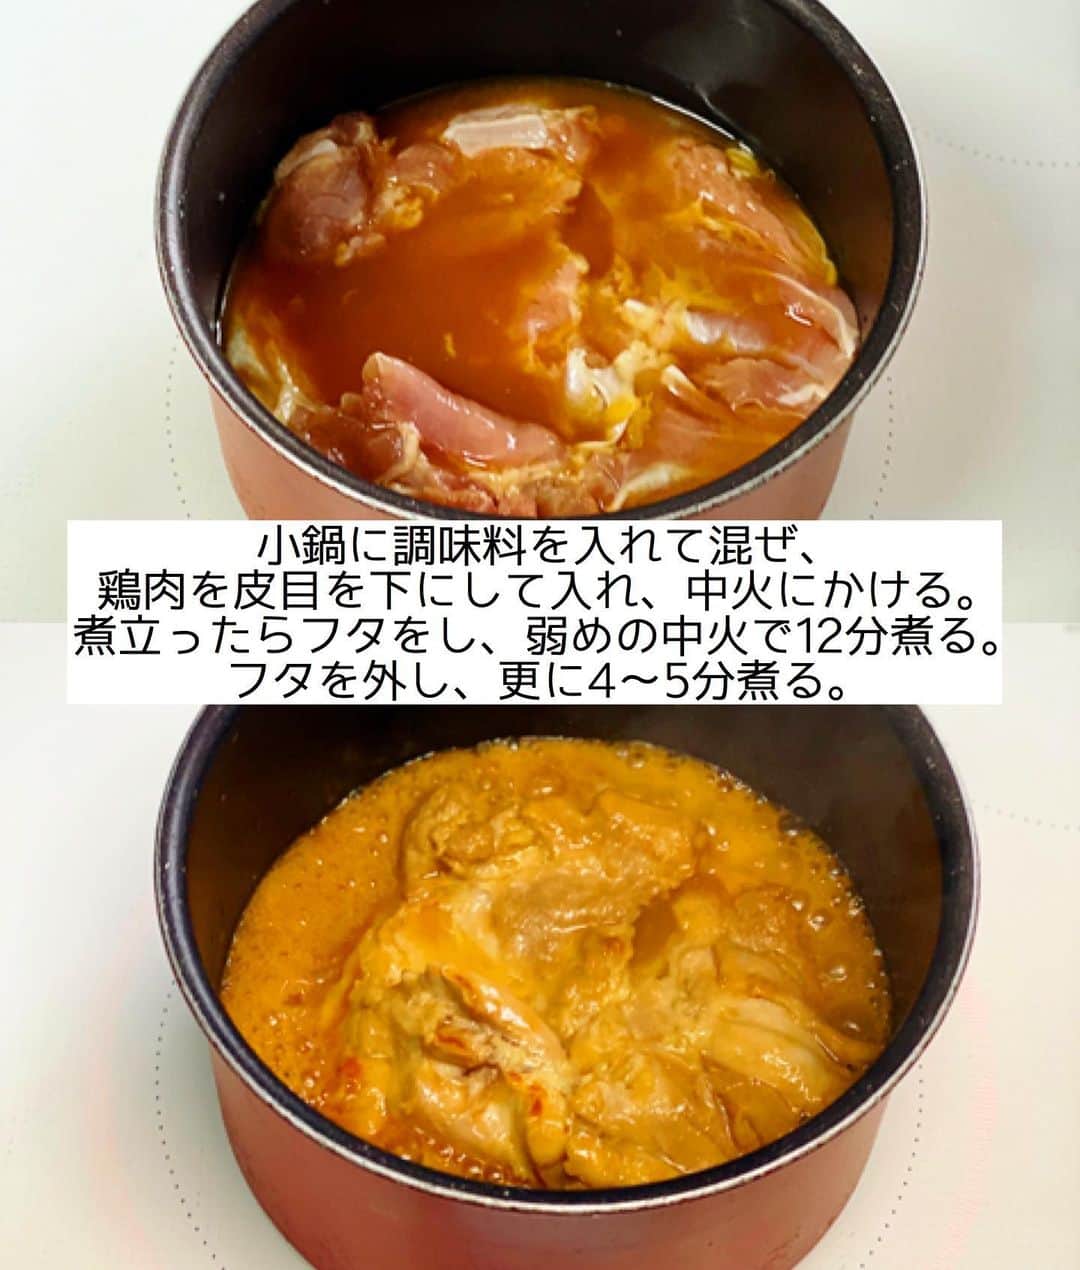 Mizuki【料理ブロガー・簡単レシピ】さんのインスタグラム写真 - (Mizuki【料理ブロガー・簡単レシピ】Instagram)「・﻿ 【#レシピ 】ーーーーーーーーーー﻿ ♡ 鶏肉のほったらかし味噌煮♡﻿ ［2品献立提案あり］﻿ ーーーーーーーーーーーーーーーー﻿ ﻿ ﻿ ﻿ おはようございます(*^^*)﻿ ﻿ 今日ご紹介させていただくのは﻿ ［鶏肉のほったらかし味噌煮］﻿ お鍋に調味料と鶏肉を入れたら﻿ ''いじらず触らず煮るだけ''の﻿ 超〜簡単レシピです(*´艸`)﻿ (途中でフタは外します💡)﻿ ﻿ ほったらかしで煮るだけで﻿ しっかり味が染みますよ〜♡﻿ これとってもラクなので﻿ よかったらお試し下さいね(*^^*)﻿ ﻿ ＊【#今どき和食 】P.24掲載﻿ 〈鶏肉のほったらかししょうゆ煮〉の﻿ アレンジレシピです♡IGTVに保存済☆﻿ ﻿ ﻿ ﻿ ＿＿＿＿＿＿＿＿＿＿＿＿＿＿＿＿＿＿＿＿﻿ 【2人分】﻿ 鶏もも肉...大1枚(300g)﻿ ●水...100ml﻿ ●酒...大2﻿ ●砂糖・醤油・味噌...各小2﻿ ﻿ 1.小さめの鍋に●を入れてよく混ぜ、鶏肉を皮目を下にして加えて中火にかける。煮立ったらフタをし、弱めの中火で12分煮る。フタを外し、煮汁が少なくなるまで4〜5分煮る。﻿ 2.食べやすい大きさに切って器に盛る。﻿ ￣￣￣￣￣￣￣￣￣￣￣￣￣￣￣￣￣￣￣￣﻿ ﻿ ﻿ ﻿ 《ポイント》﻿ ♦︎小さめの鍋を使用して下さい♩私は16cmの鍋を使用しています♩﻿ ♦︎鶏肉を裏返したりする必要はありません♩﻿ ♦︎煮詰め具合で濃さを調節できます♩薄味がお好きな方は煮汁を多めに残して下さい♩﻿ ﻿ ﻿ ﻿ ﻿ ﻿ ＿＿＿＿＿＿＿＿＿＿＿＿＿＿＿﻿ 🥣🥣🥣2品献立提案🥣🥣🥣﻿ ￣￣￣￣￣￣￣￣￣￣￣￣￣￣￣﻿ 【合間に作れるおすすめ副菜】﻿ >長芋と水菜のじゃこサラダ(P.99)﻿ >玉ねぎとワカメの甘酢和え(P.92)﻿ (#Mizukiの2品献立 より)﻿ ﻿ 【献立の段取り】﻿ 鶏肉を火にかけ、﻿ ほったらしの時間に副菜を作る🥢﻿ ﻿ ﻿ ﻿ ﻿ ﻿ ﻿ _____________________________________﻿ \15分でいただきます/﻿ 📕#Mizukiの2品献立 📕﻿ (9月24日発売・マガジンハウス)﻿ ￣￣￣￣￣￣￣￣￣￣￣￣￣￣￣￣￣﻿ ﻿ 忙しい私たちには﻿ 2品くらいがちょうどいい！﻿ 『しんどくない献立、考えました』﻿ ￣￣￣￣￣￣￣￣￣￣￣￣￣￣￣￣﻿ ﻿ ーーーーーPART.1 ーーーーー﻿ 【Mizukiのお墨つき！２品献立ベスト10】﻿ 約15分でできる10献立をご紹介！﻿ メインは全部フライパン、副菜はレンチンor混ぜるだけ♡﻿ ﻿ ーーーーーPART.2 ーーーーー﻿ 【フライパンひとつ！今夜のメインおかず】﻿ 献立の主役になる肉や魚のおかず50品！﻿ Part3の副菜と組み合わせれば﻿ 献立のバリエーションが広がりますよ♩﻿ ﻿ ーーーーー PART.3 ーーーーー﻿ 【合間に作れる！ 野菜別かんたん副菜】﻿ レンチンor和えるだけの副菜レシピを﻿ 素材別にたっぷり収録♩﻿ ﻿ ーーーーー番外編ーーーーー﻿ 【ひとつで満足！ご飯＆麺】﻿ 【具だくさん！おかずスープ】﻿ 【オーブンいらずのおやつレシピ】﻿ ￣￣￣￣￣￣￣￣￣￣￣￣￣￣￣￣￣￣﻿ ﻿ ﻿ ﻿ Amazon予約プレゼントキャンペーン﻿ 🎁🎁🎁🎁🎁🎁🎁🎁🎁🎁🎁🎁﻿ ＿＿＿＿＿＿＿＿＿＿＿＿＿＿＿＿＿﻿ 新刊【2品献立】をAmazonで予約し﻿ インスタにアップして下さった方に﻿ 抽選で［フライパン］or［ボールセット］を﻿ プレゼントさせていただきます♩﻿ ￣￣￣￣￣￣￣￣￣￣￣￣￣￣￣￣￣﻿ ﻿ ✅【インスタ応募方法▼】﻿ ①本の表紙の画像を1枚目に、﻿ Amazonで予約したことがわかる画像を﻿ 2枚目に貼り付け(どちらもスクショでOK)﻿ ［#Mizukiの2品献立 ］のハッシュタグを付けて投稿！﻿ 以上で応募完了です(*^^*)﻿ ﻿ ￣￣￣￣￣￣￣￣￣￣￣￣￣￣￣￣￣￣﻿ ハイライトにリンク🔗あります💓﻿ ﻿ ﻿ ﻿ ﻿ ﻿ ﻿ ￣￣￣￣￣￣￣￣￣￣￣￣￣￣￣￣￣￣﻿ レシピを作って下さった際や﻿ レシピ本についてのご投稿には﻿ タグ付け( @mizuki_31cafe )して﻿ お知らせいただけると嬉しいです😊💕﻿ ﻿ ﻿ ﻿ ﻿ ﻿ #鶏肉#味噌#ほったらかし煮#Mizuki#簡単レシピ#時短レシピ#節約レシピ#料理#フーディーテーブル#マカロニメイト#おうちごはん#デリスタグラマー#料理好きな人と繋がりたい#食べ物#料理記録#おうちごはんlover#写真好きな人と繋がりたい#foodpic#cooking#recipe#lin_stagrammer#foodporn#yummy#f52grams#鶏肉のほったらかし味噌煮m」9月23日 7時11分 - mizuki_31cafe